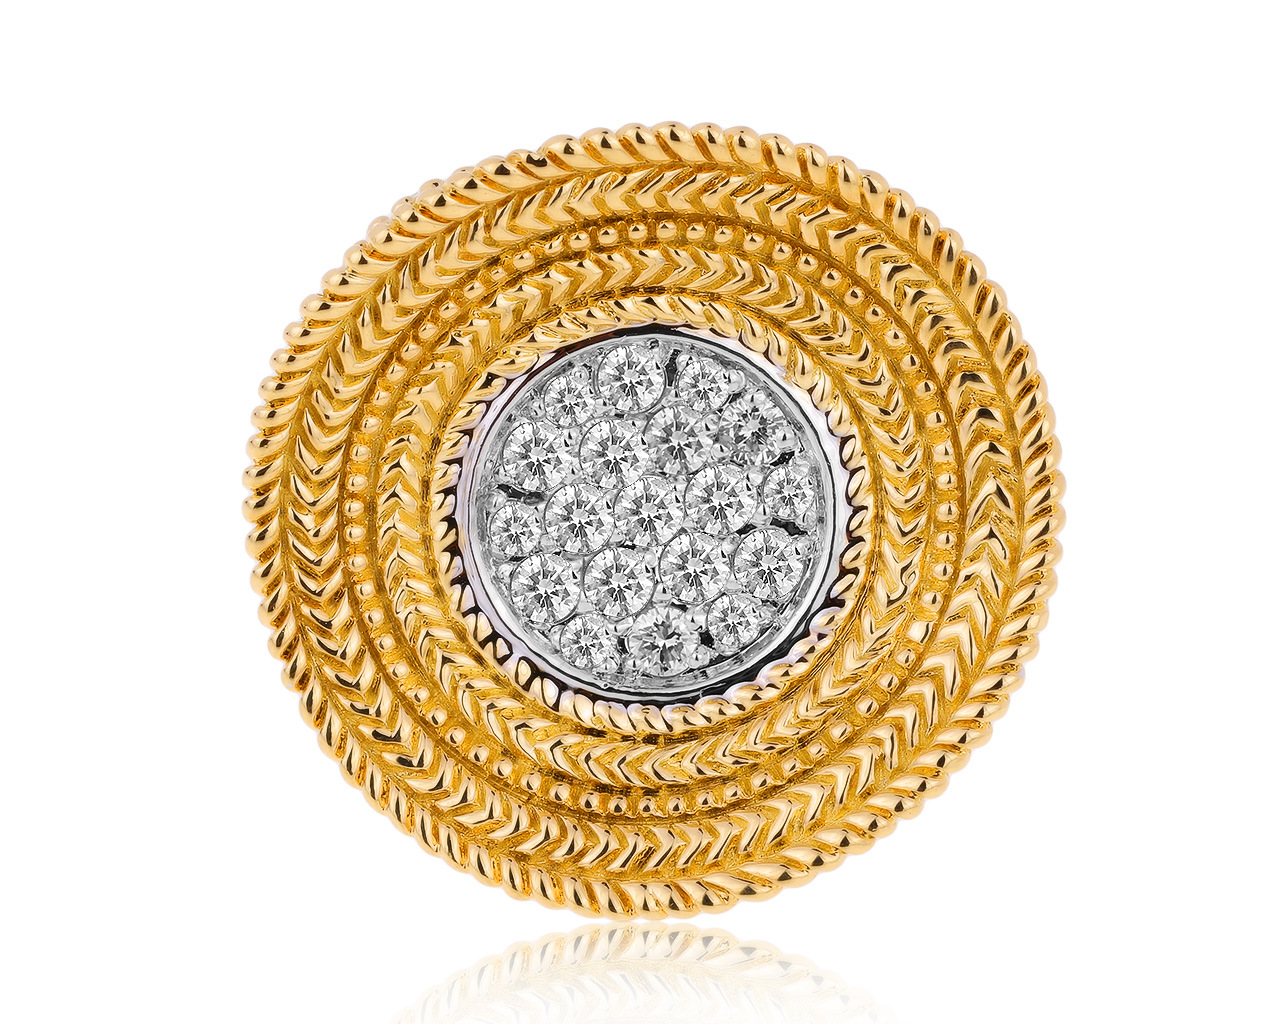 Изумительное золотое кольцо с бриллиантами 1.07ct